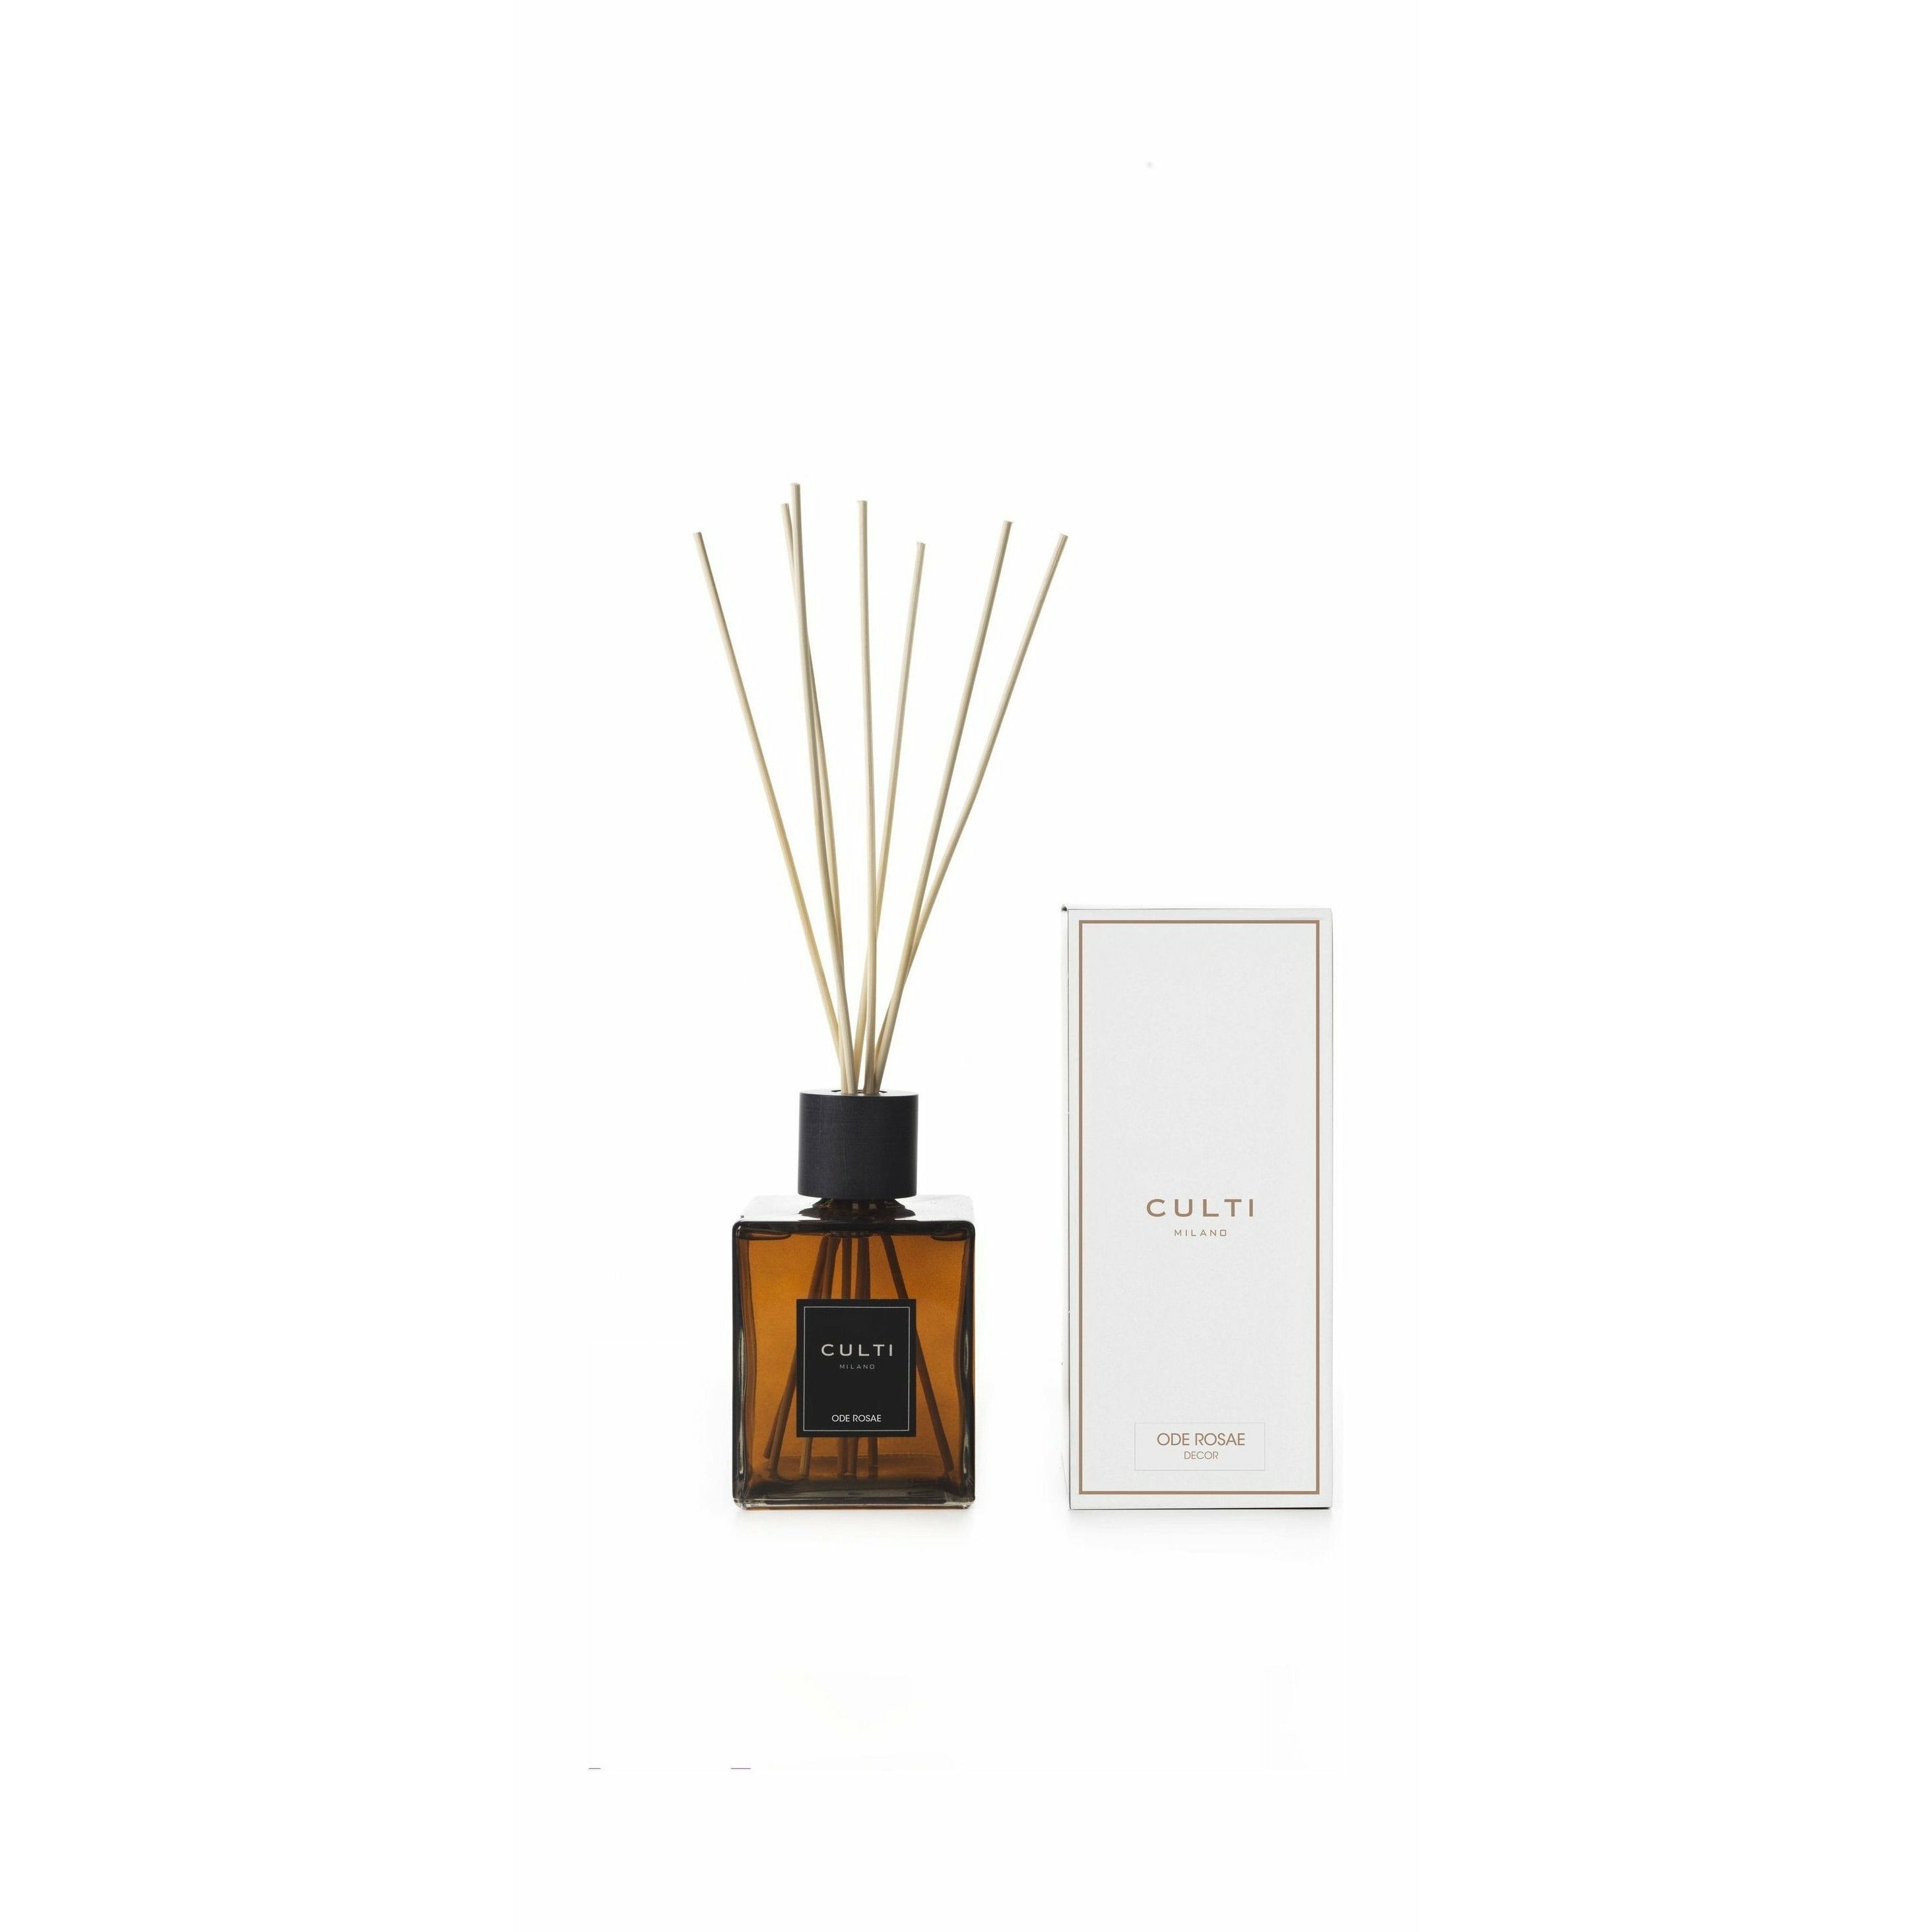 Culti Milano Decor Classic Fragrance Diffuser Oderosae, 1 L